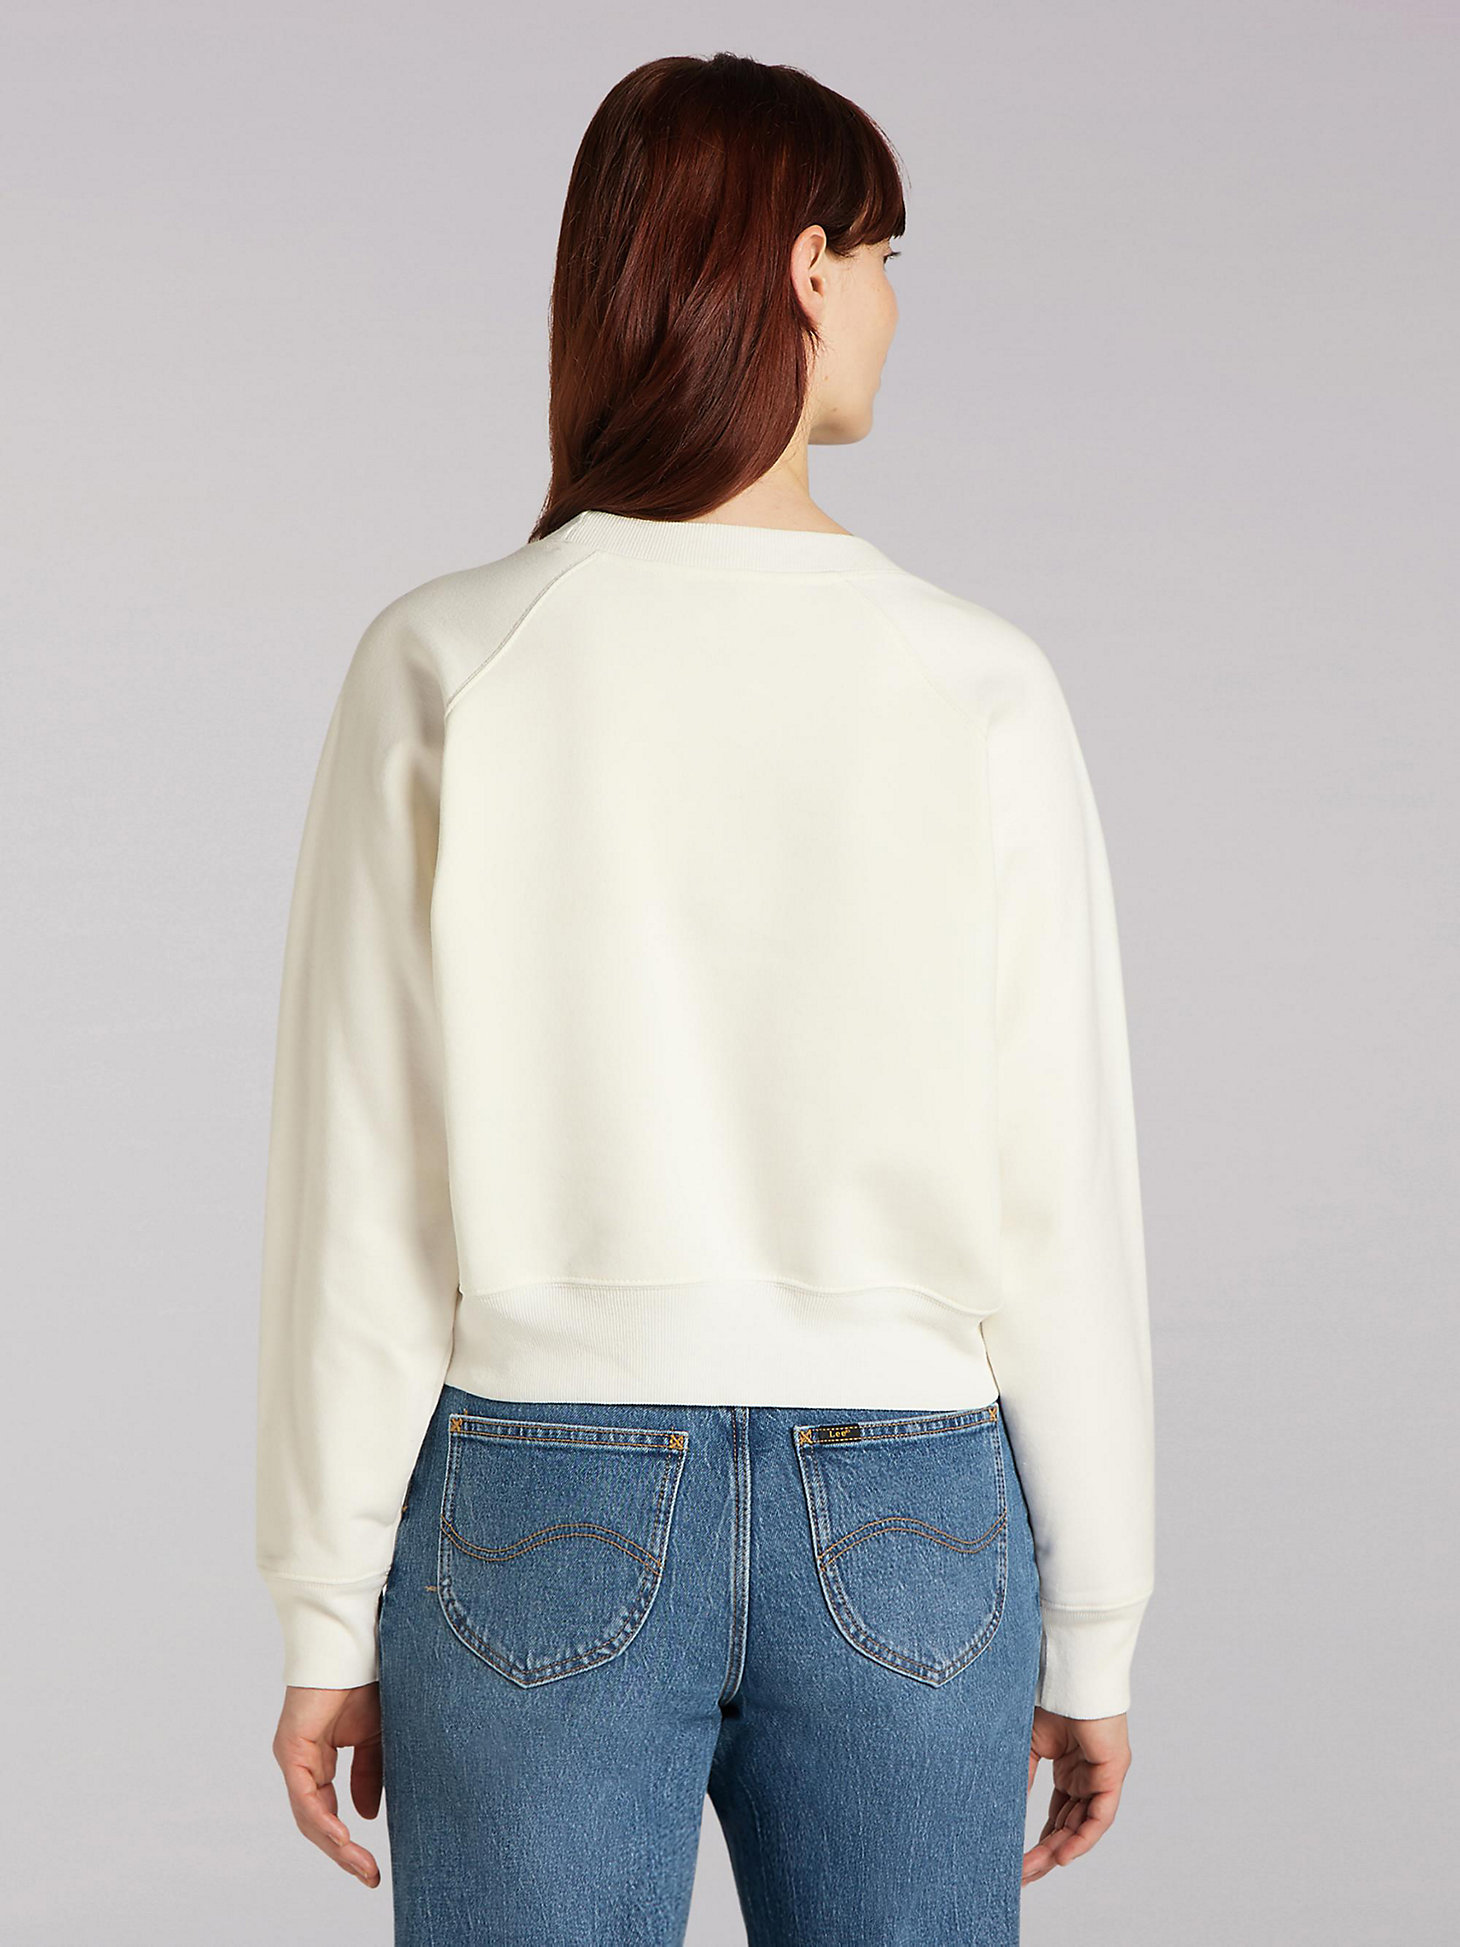 Women's Lee European Collection Crop Sweatshirt in White Canvas alternative view 1